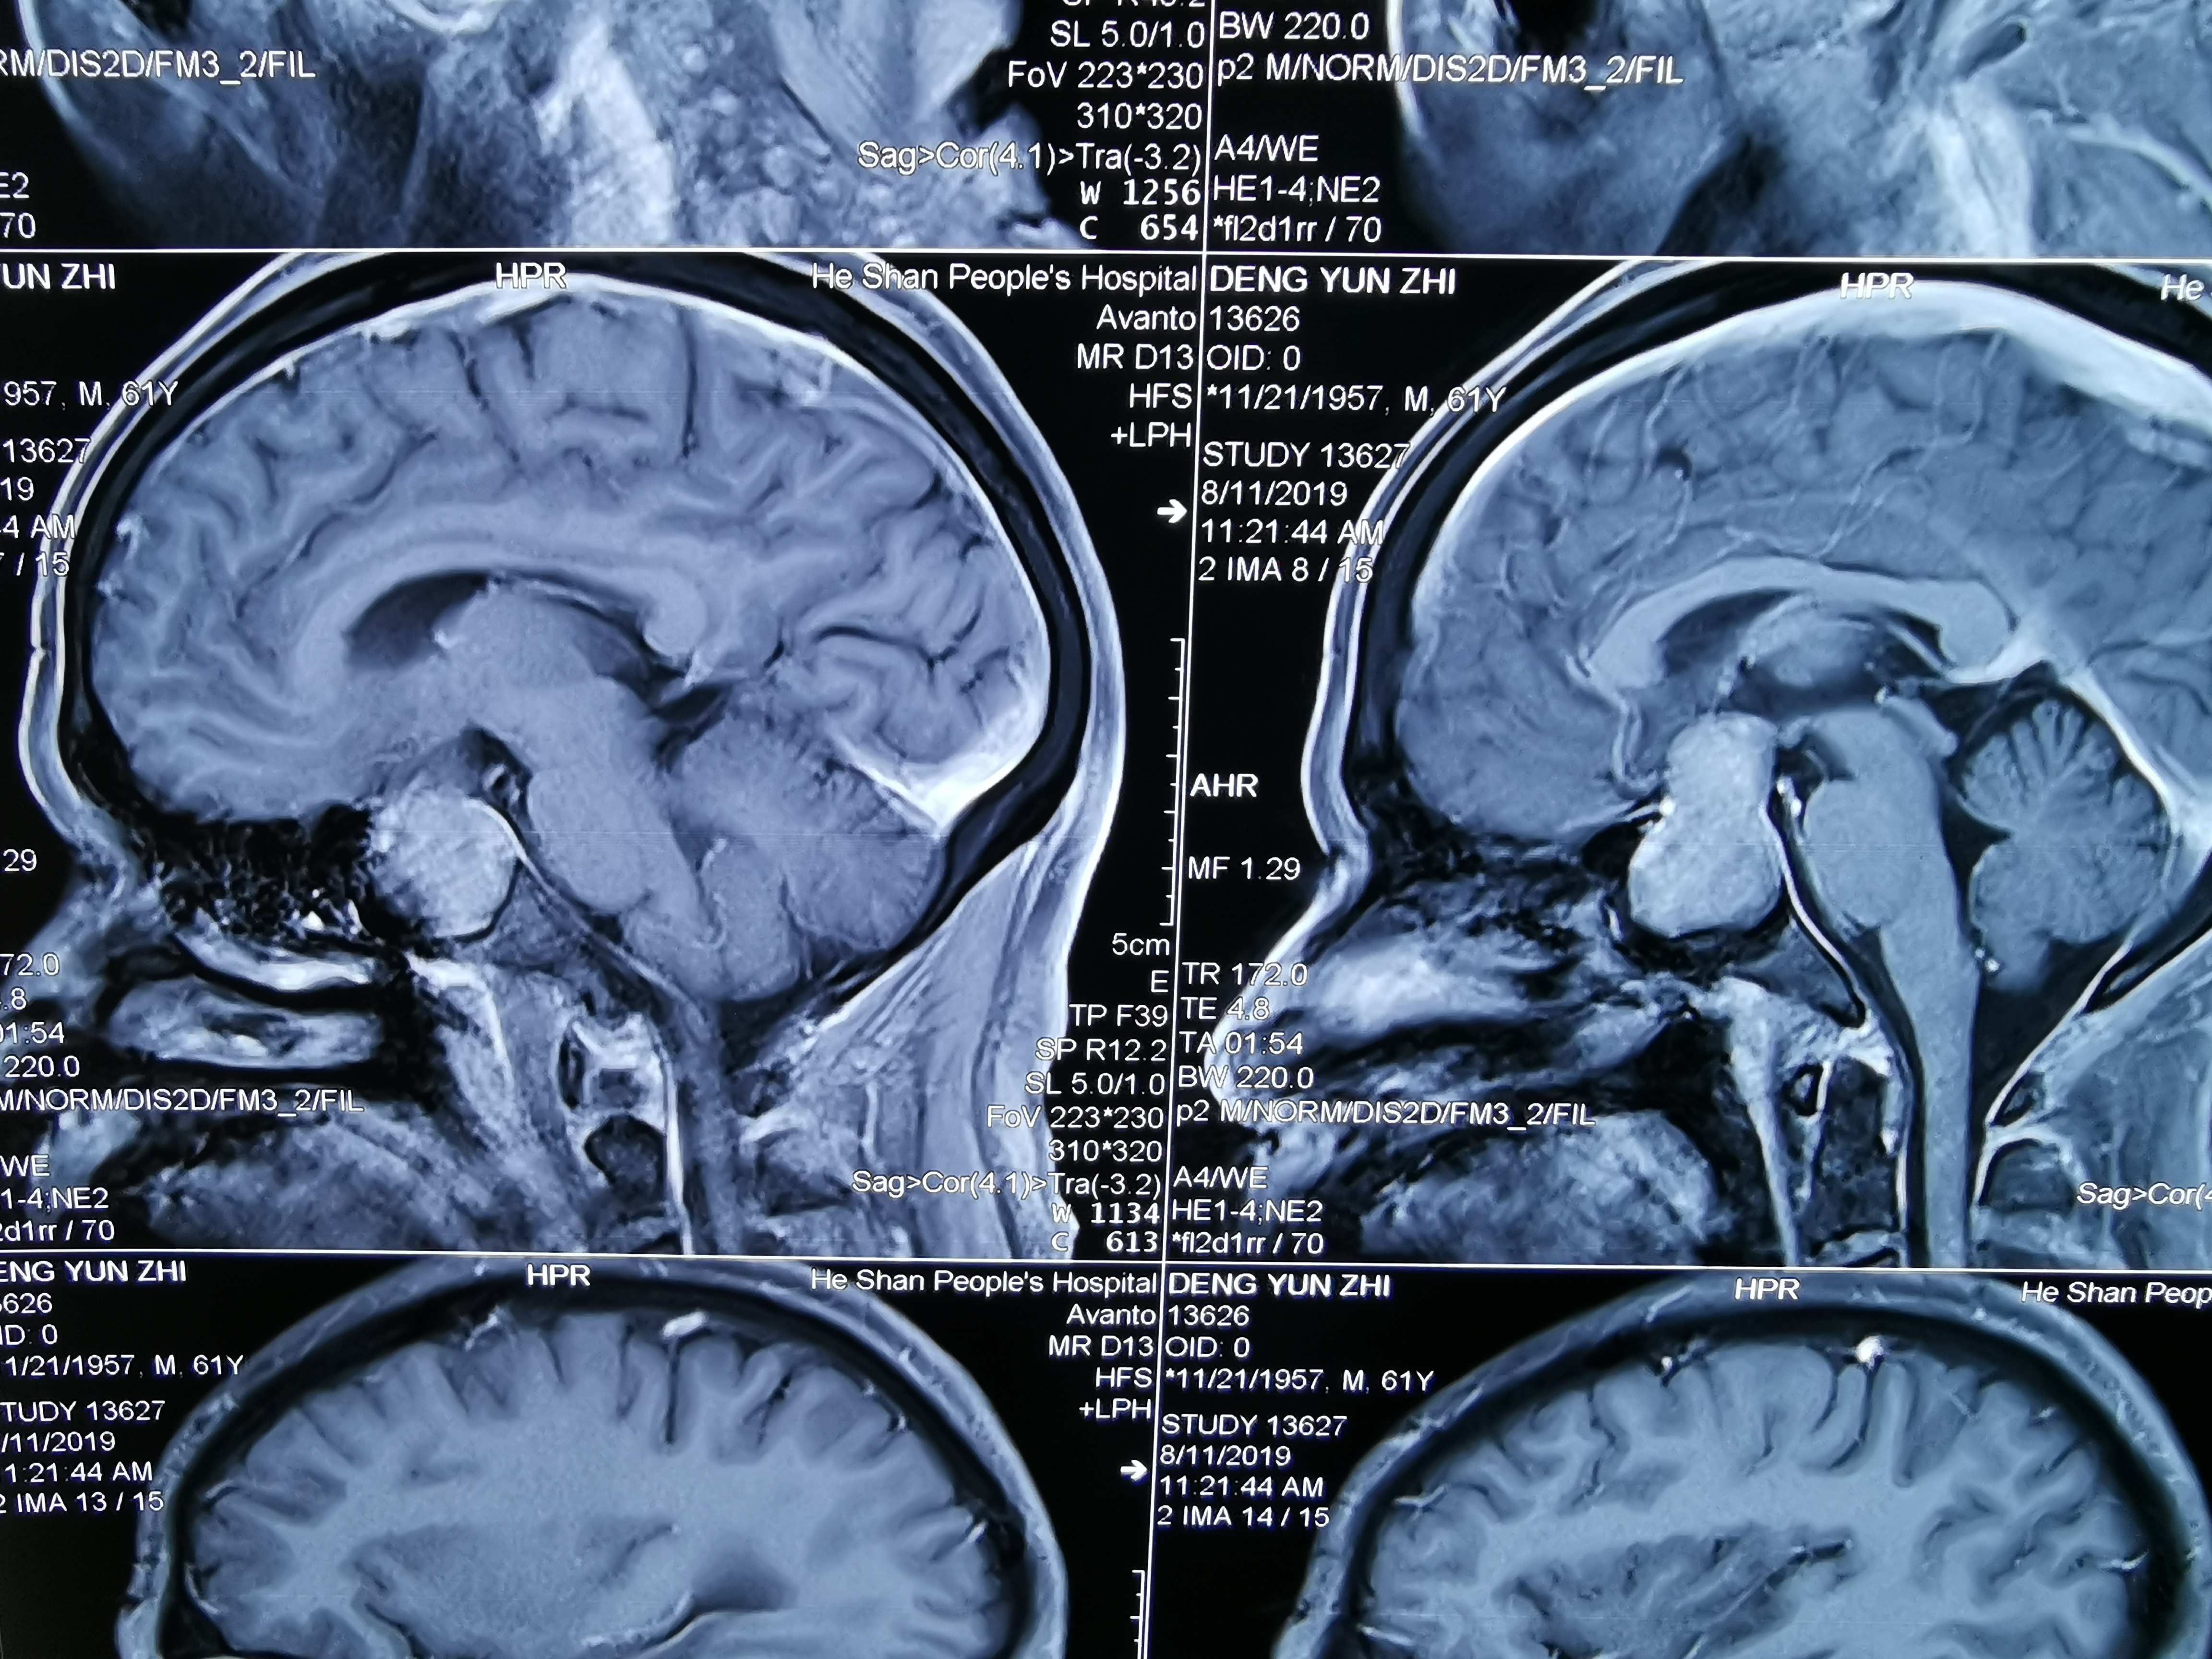 矢状位看肿瘤生长达三脑室底,视神经视交叉明显上台,鞍隔似乎完整